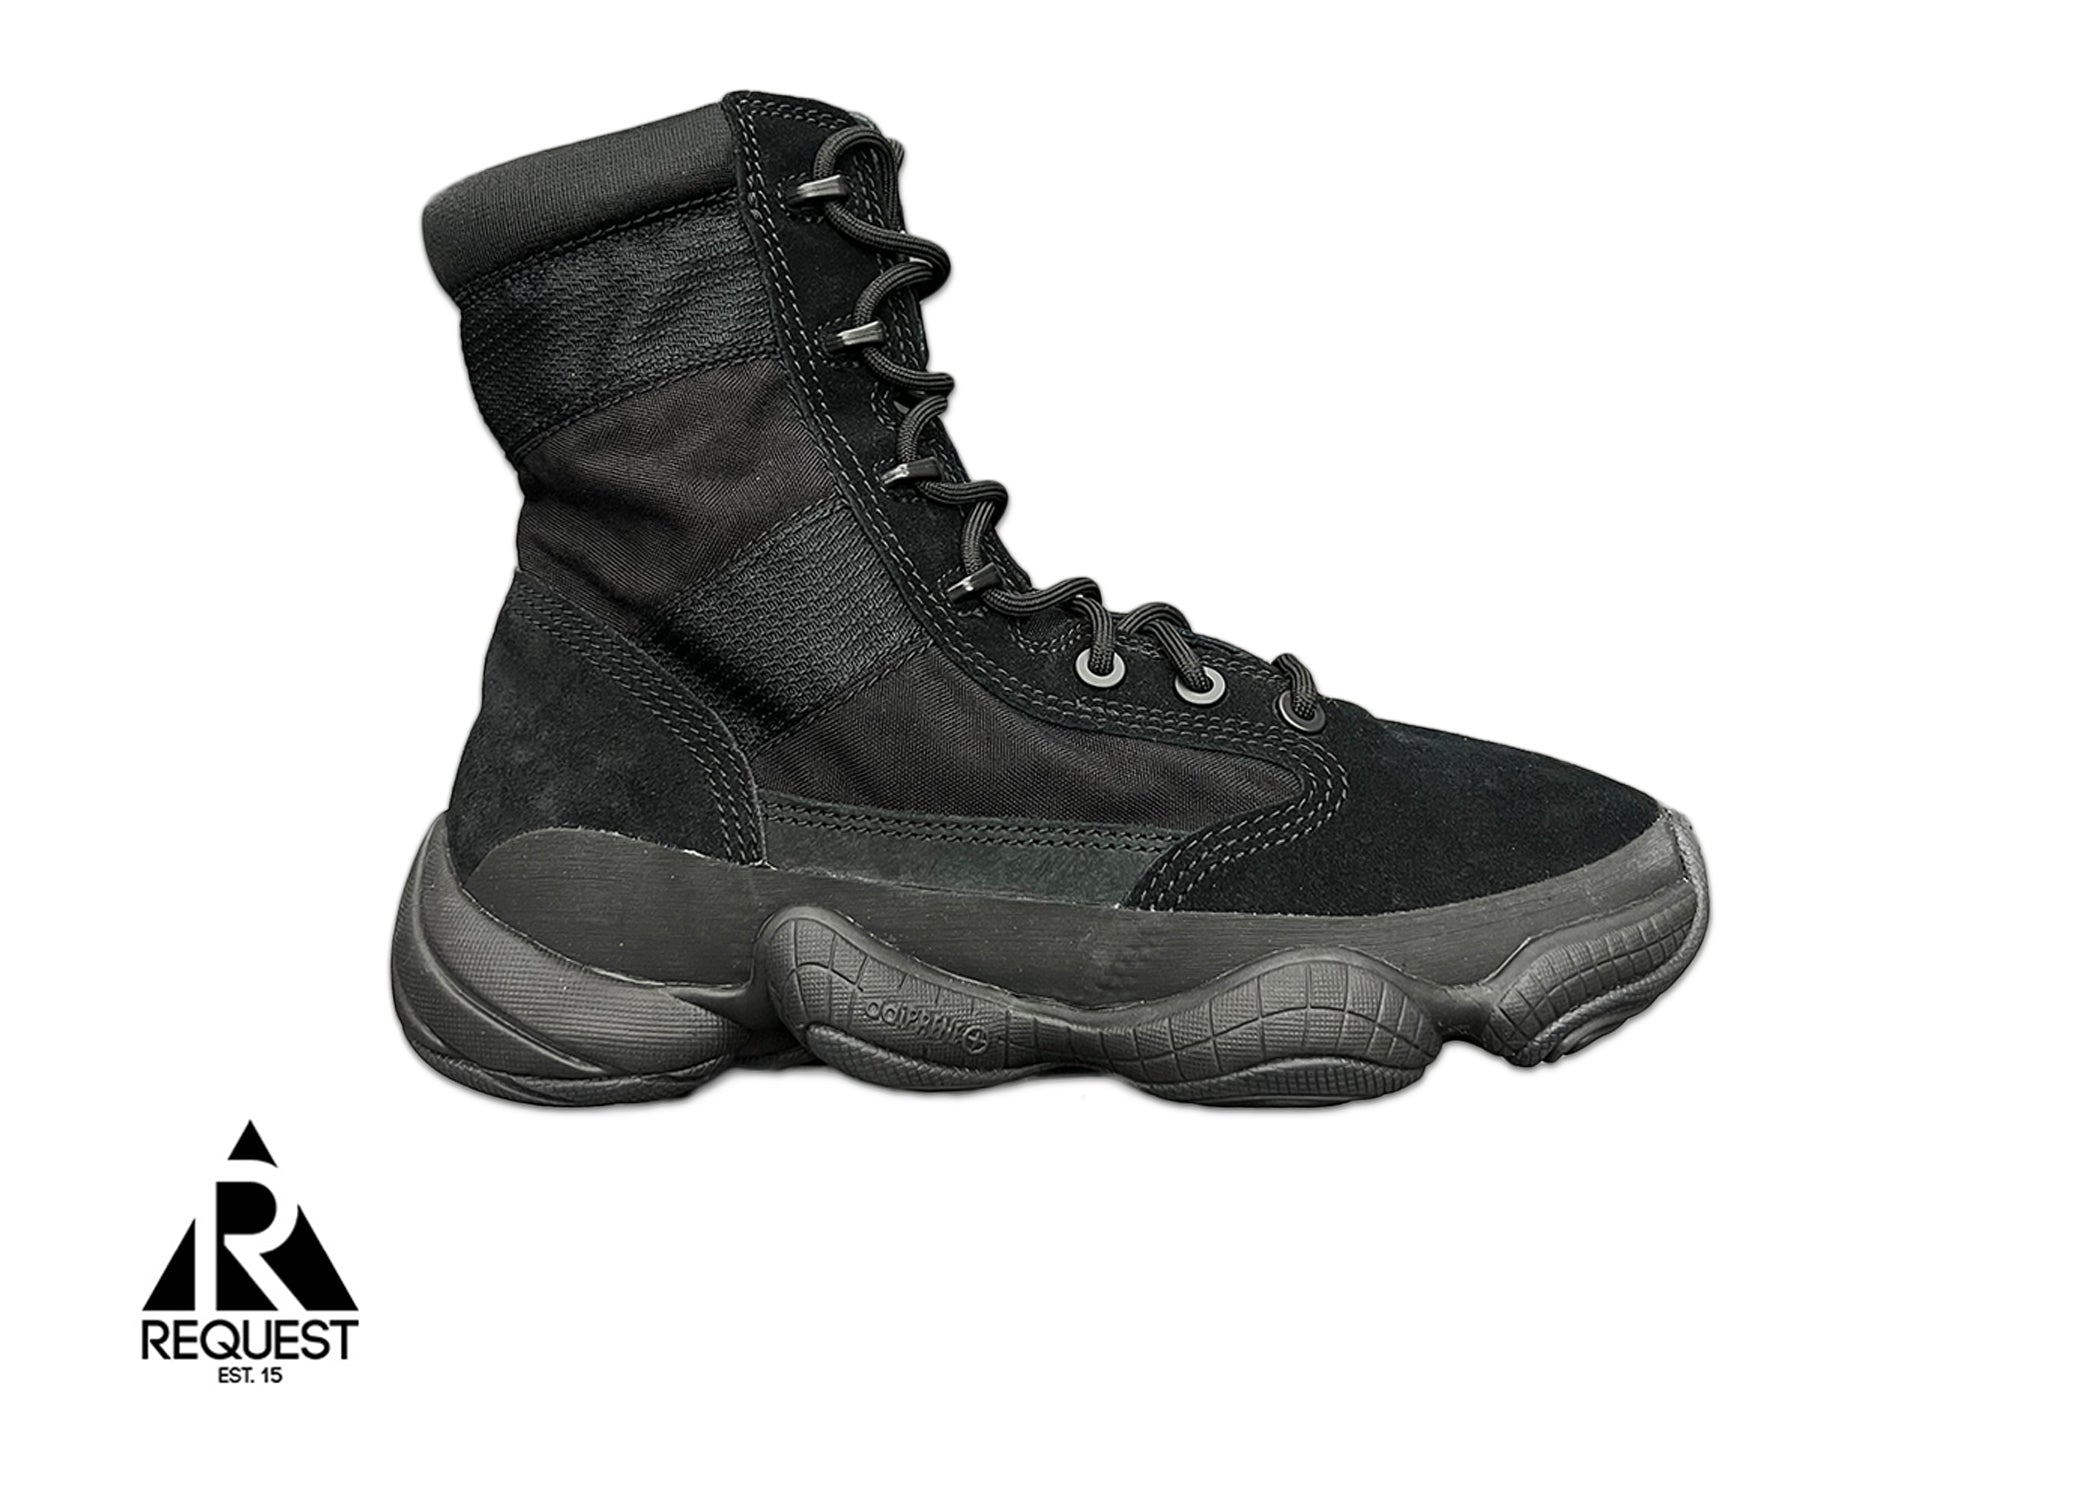 Adidas Yeezy Tactical 500 Boot "Onyx"